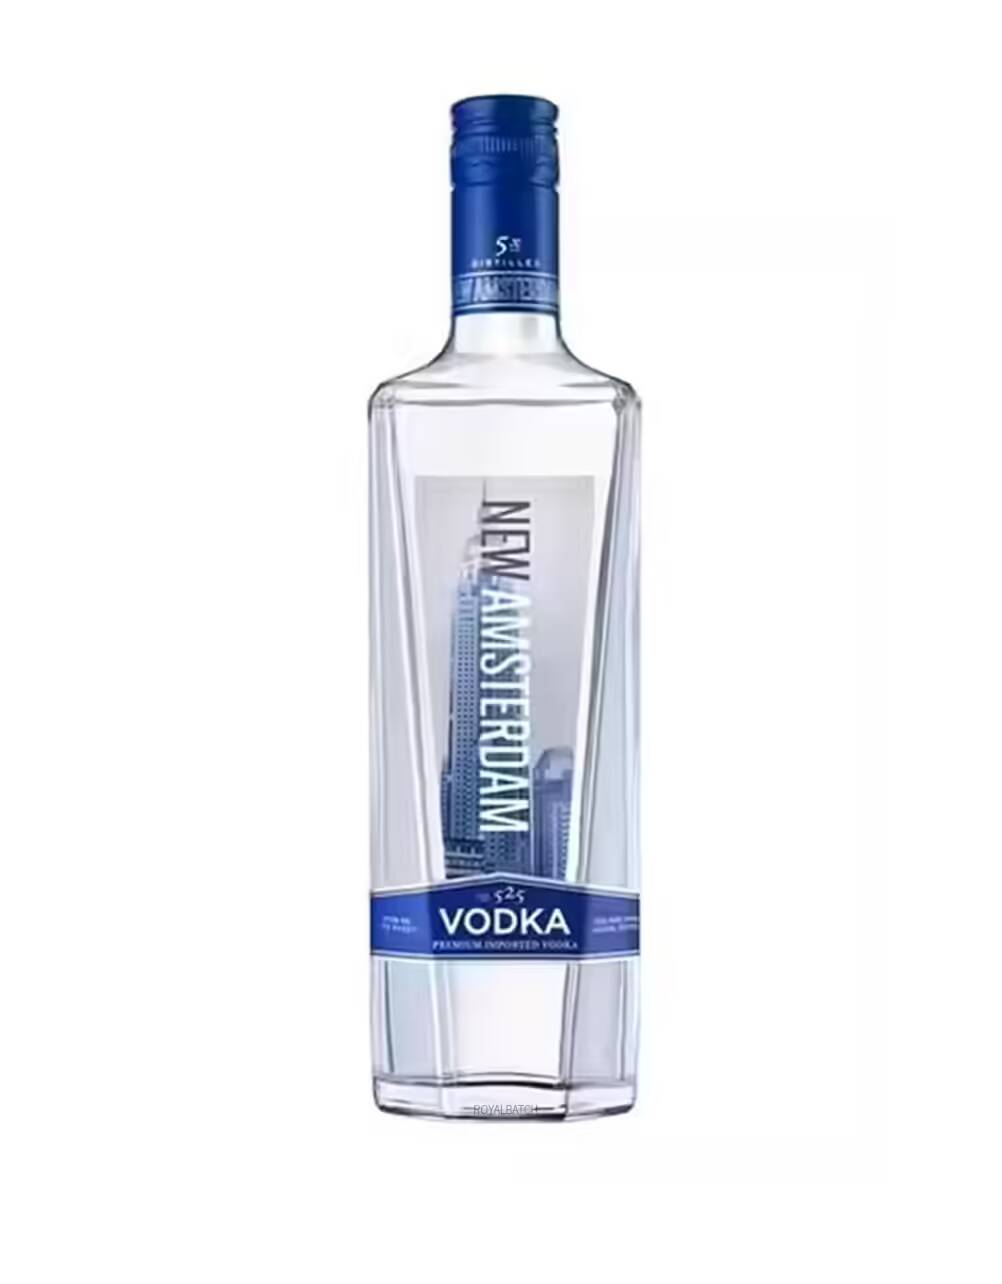 New Amsterdam Vodka 375ml